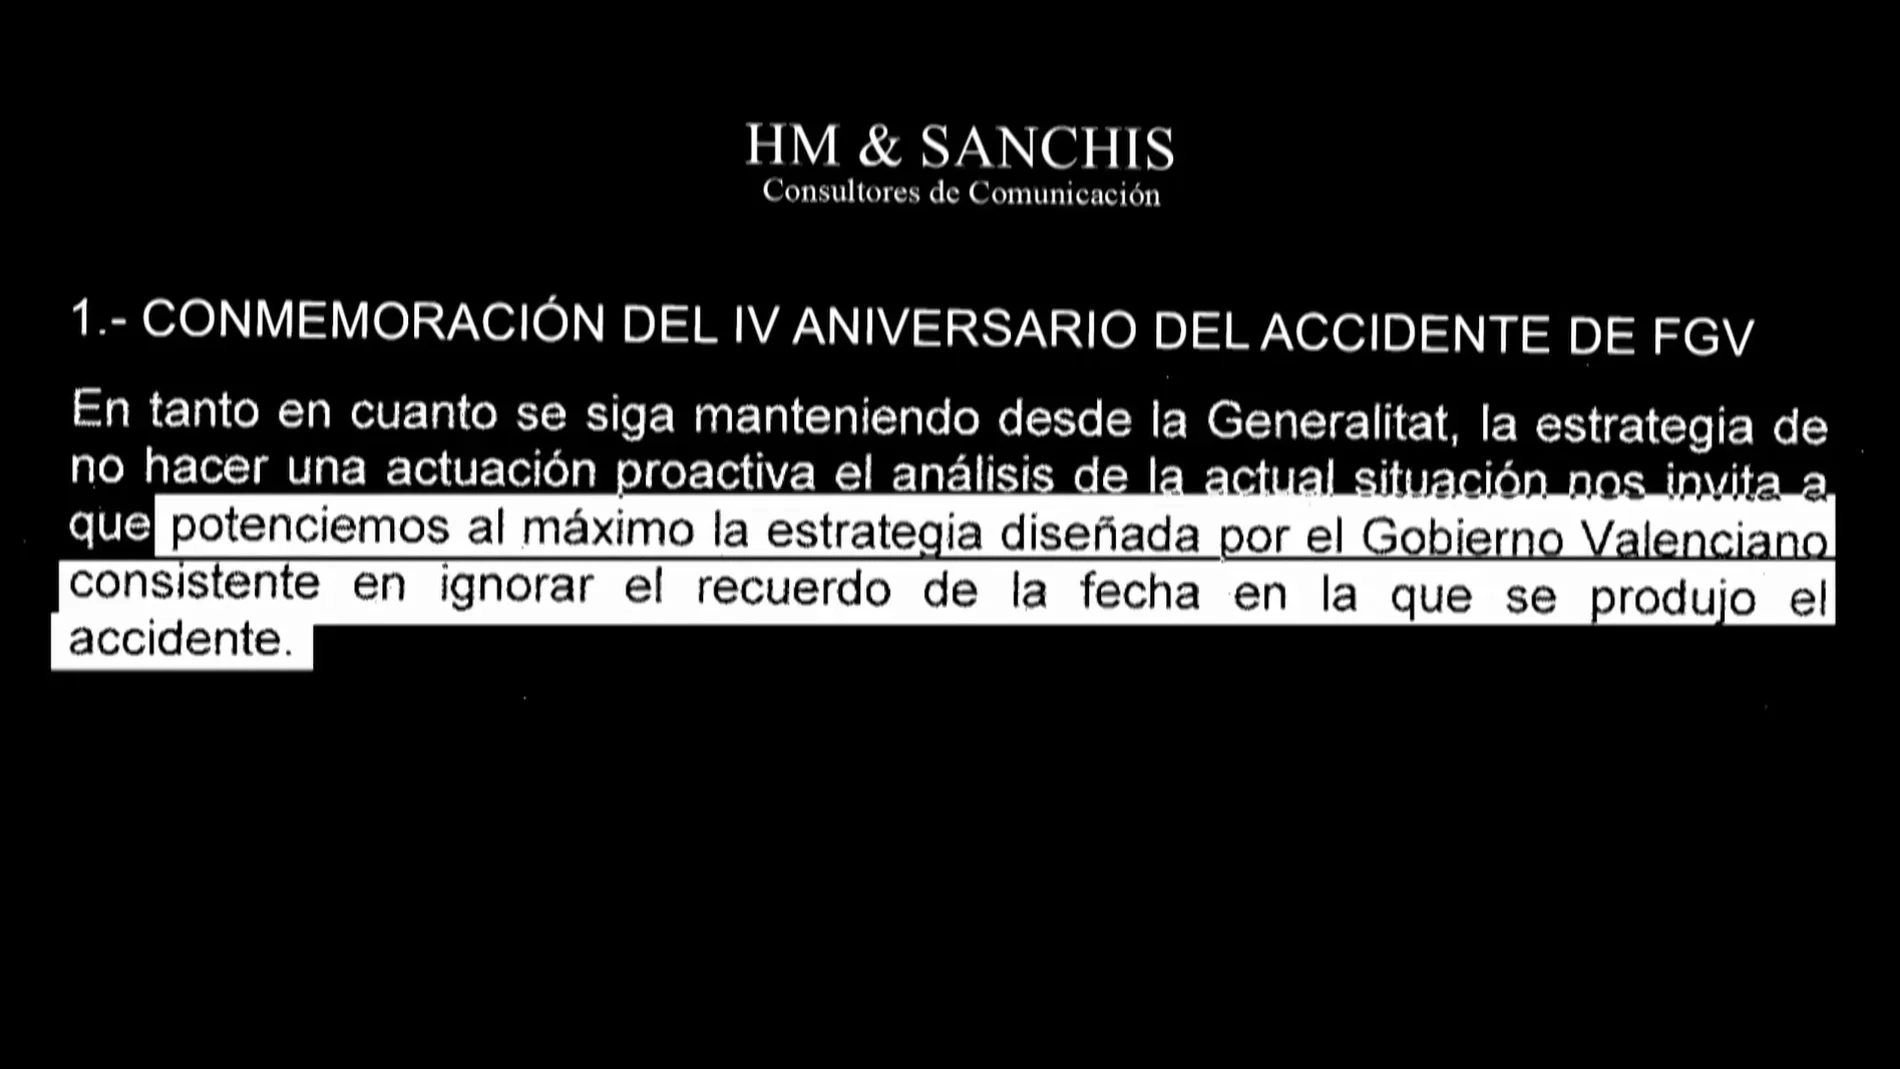 Documento de HM & Sanchis